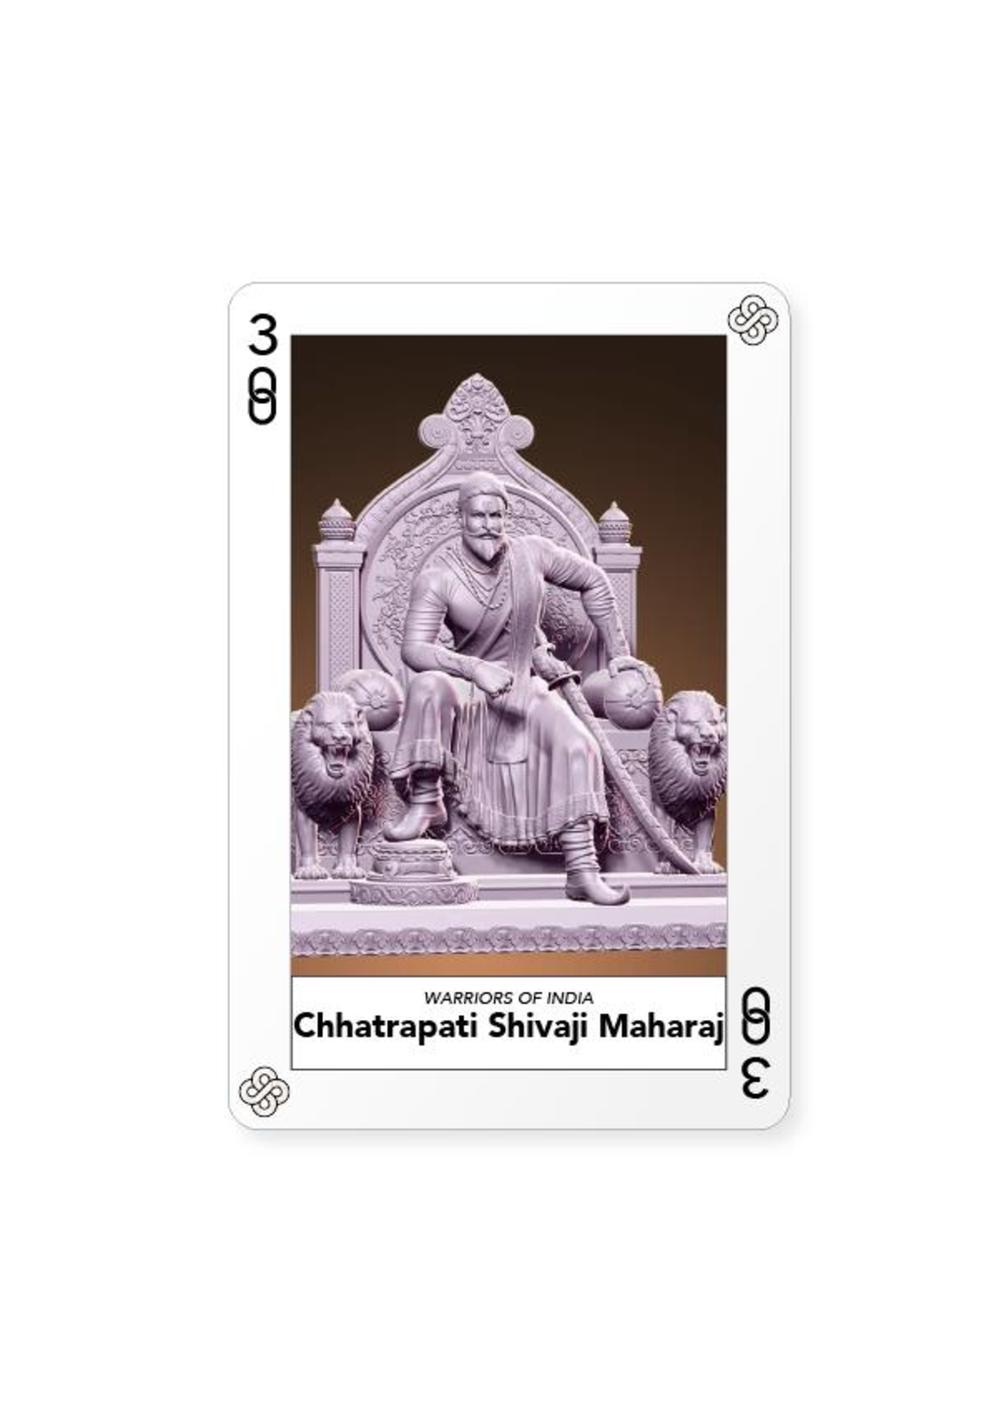 Certificate of Authenticity and Consignment - Chhatrapati Shivaji Maharaj